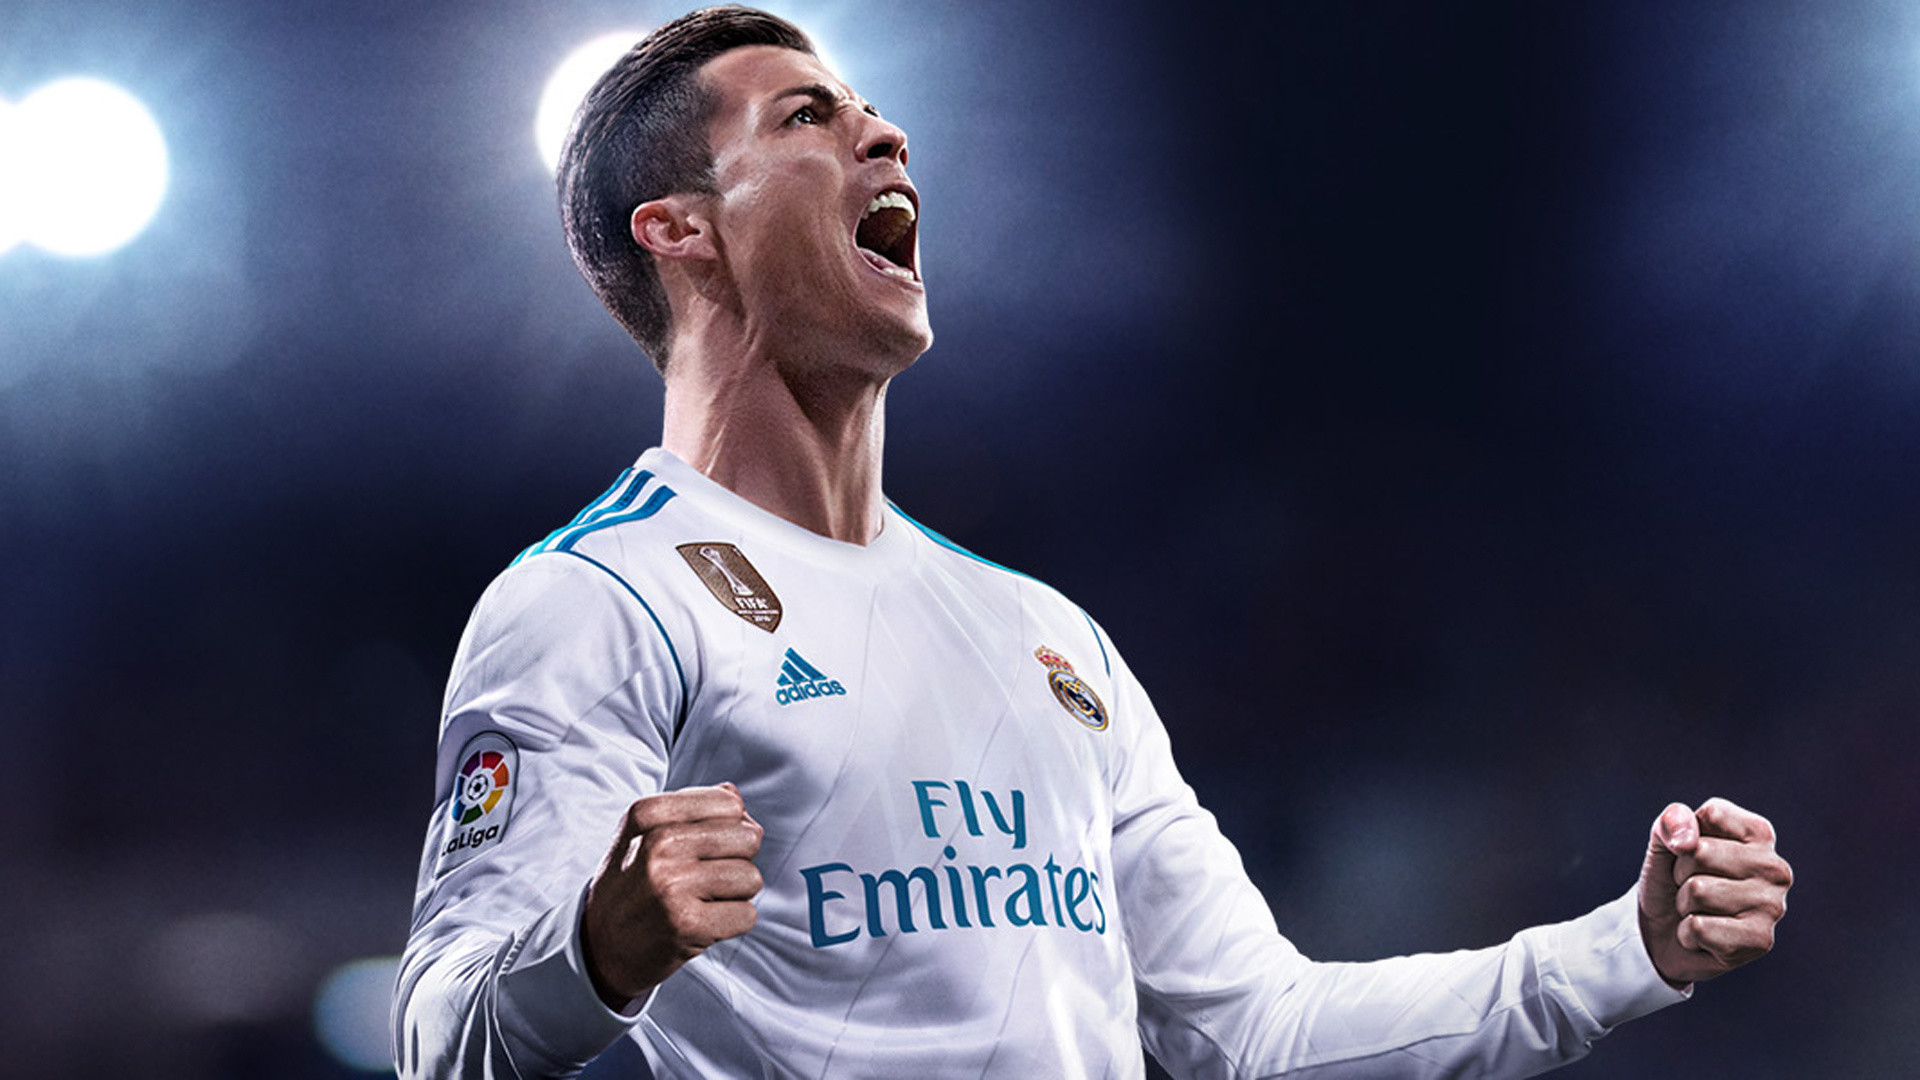 1920x1080 FIFA 18 - Cristiano Ronaldos bekannter "Siii!"-Jubel wird im Spiel zur  Lachnummer - GamePro